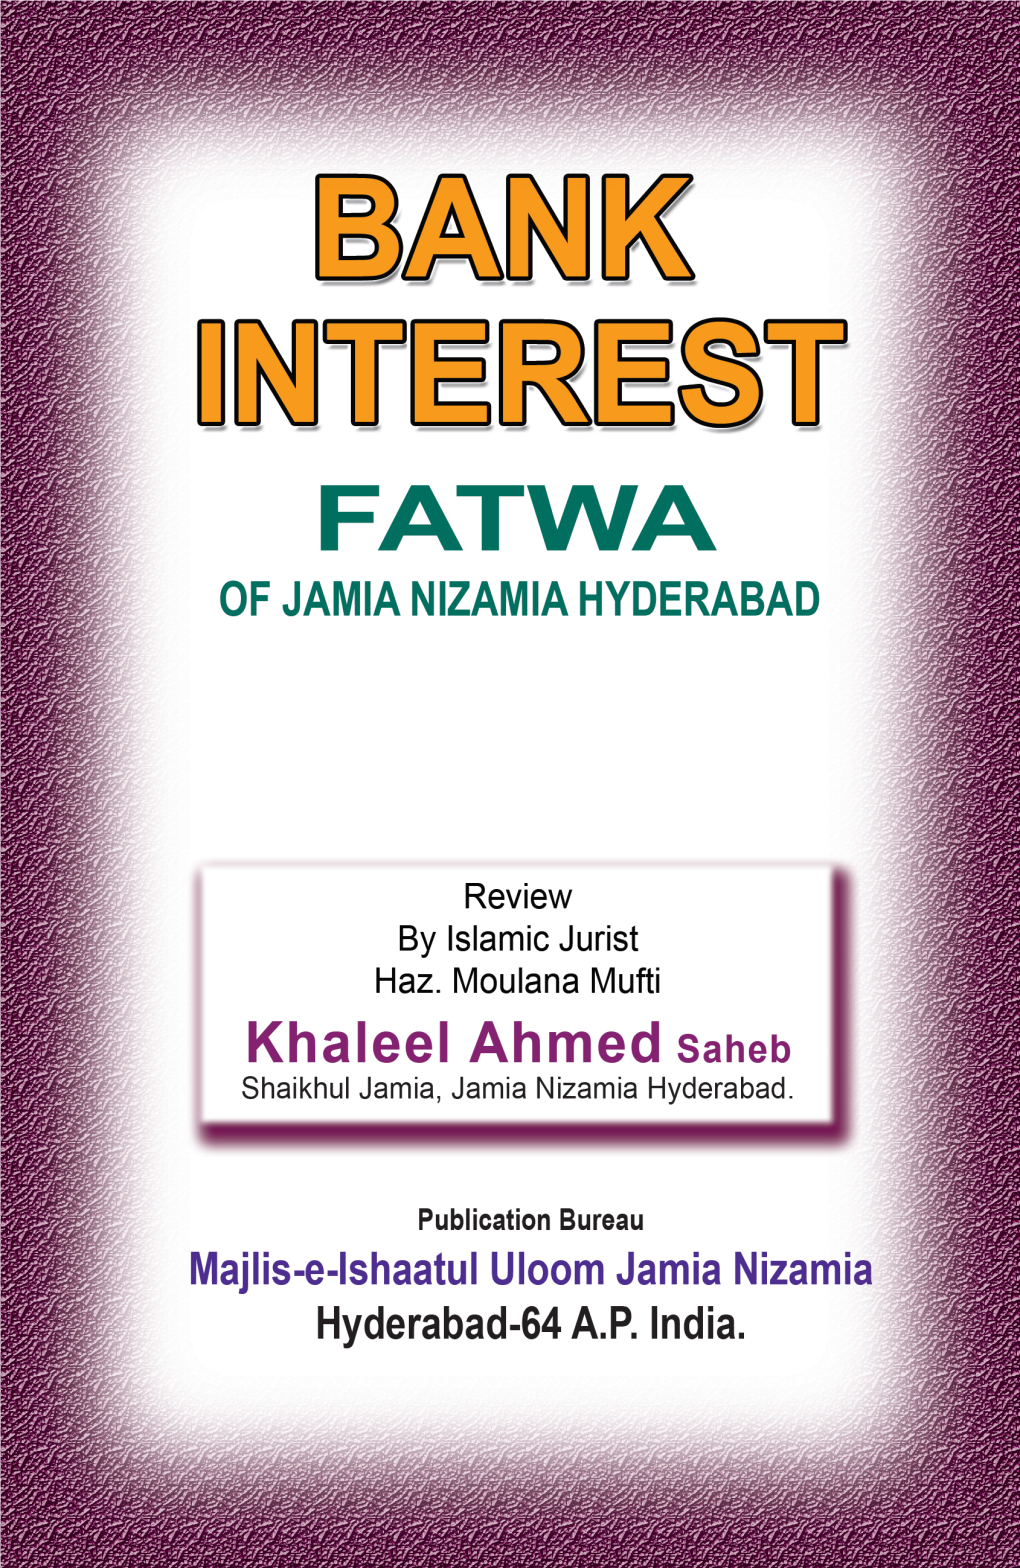 D:\Jamia Nizamia\Bank Inter\BANK INTEREST FATWA.INP